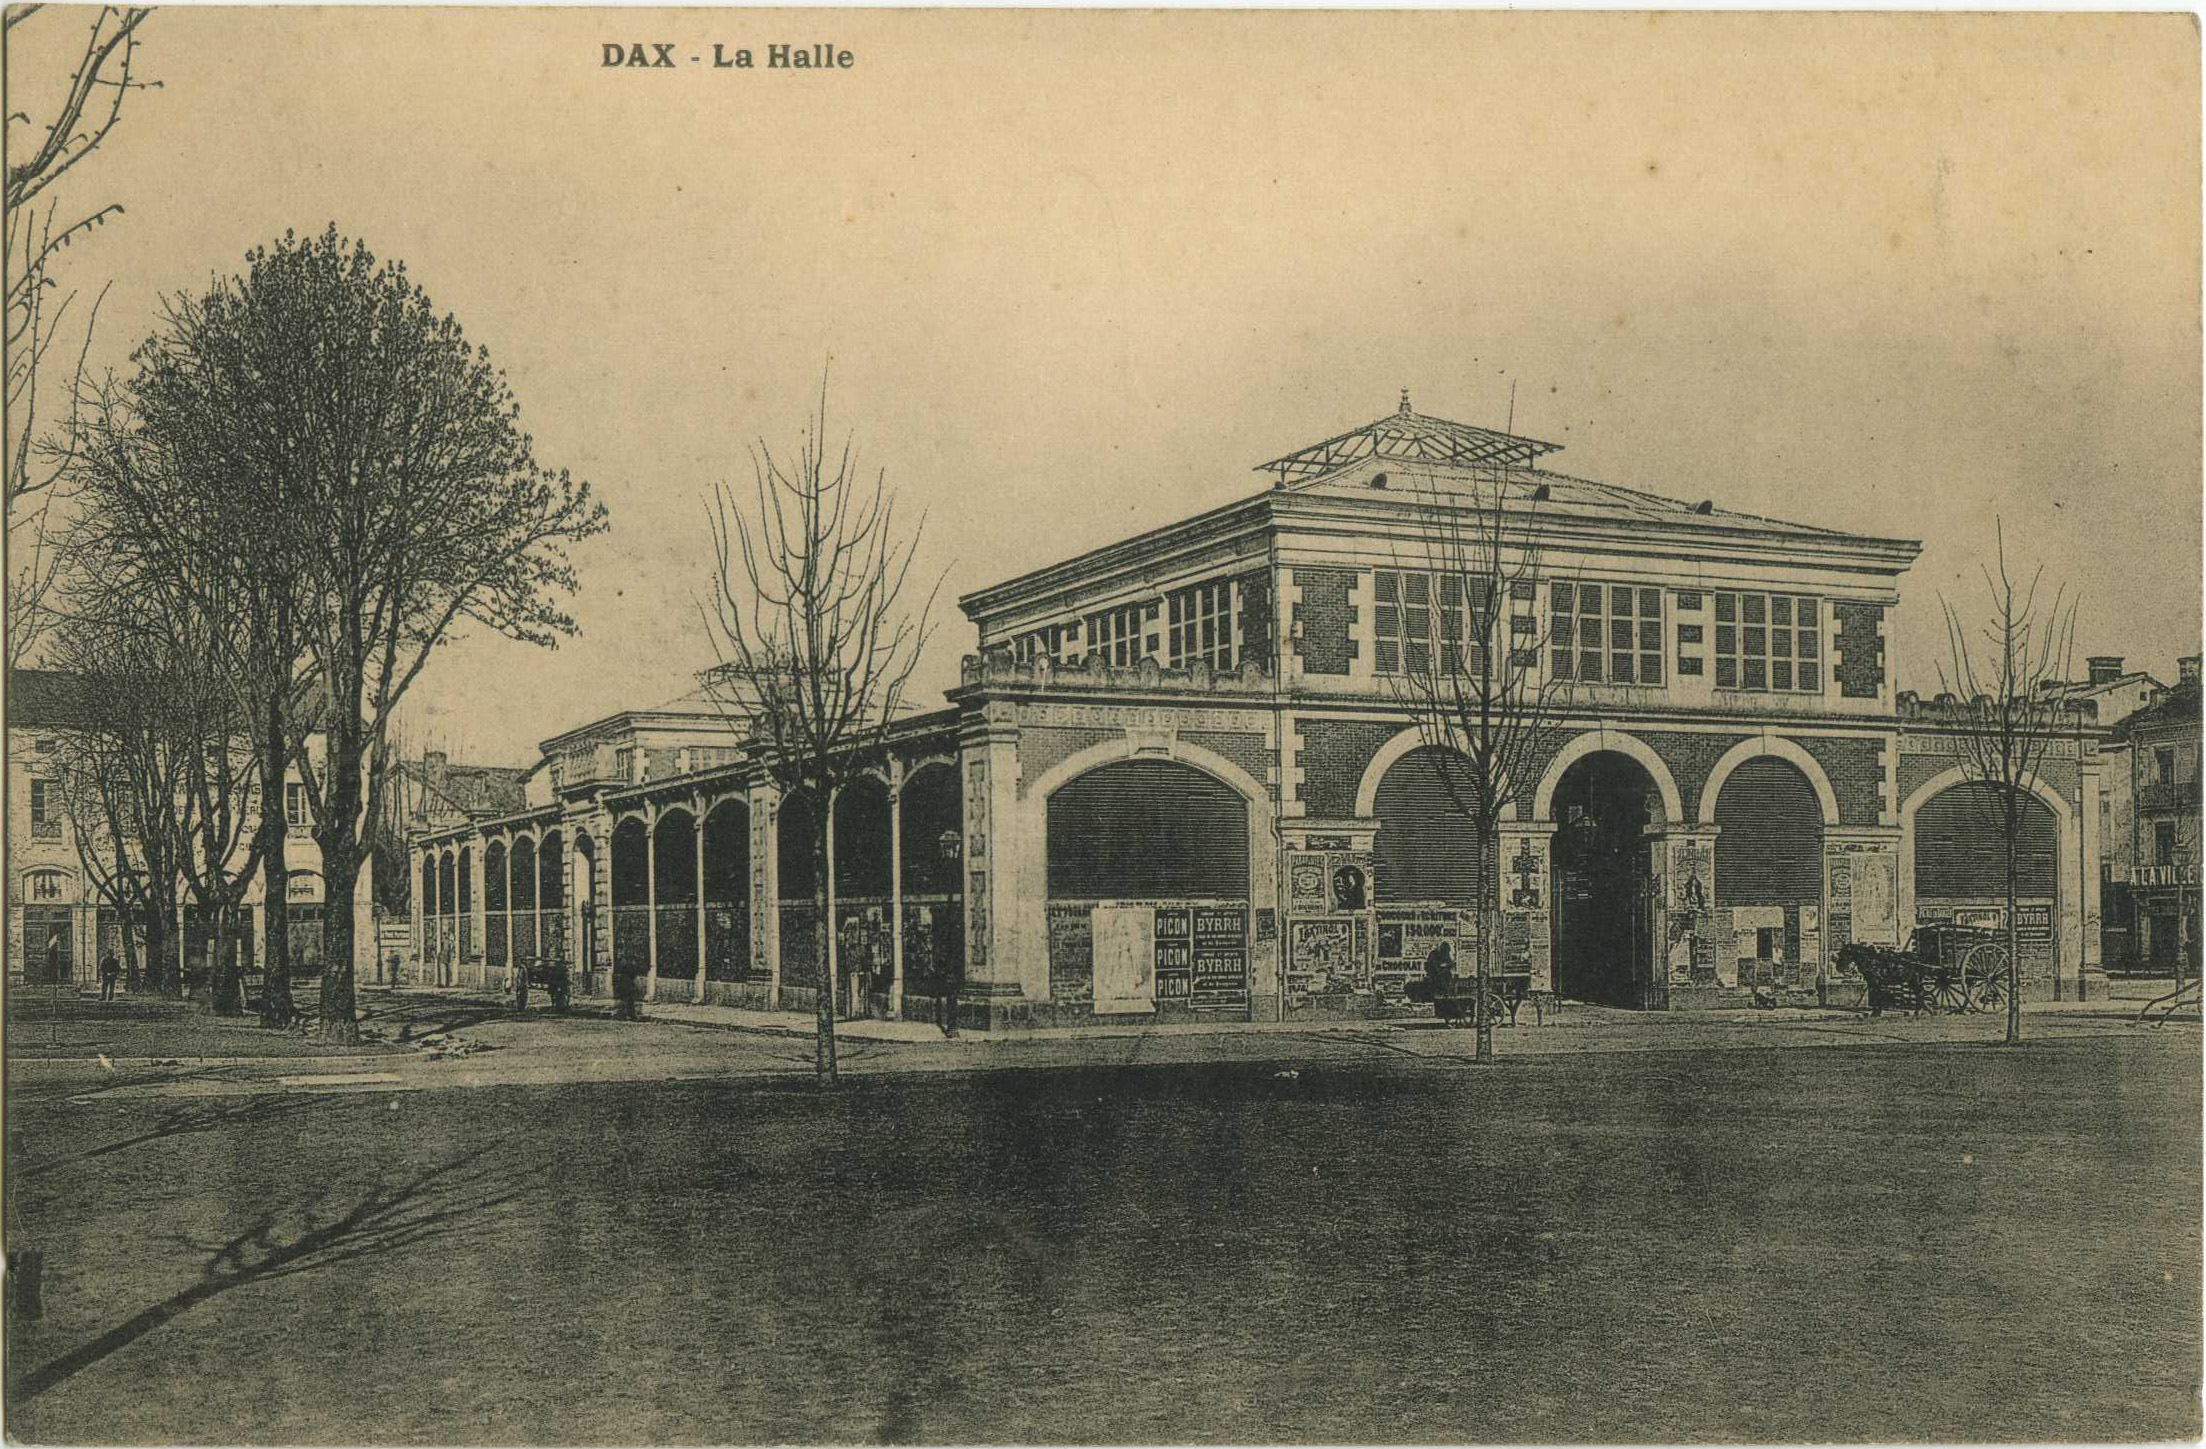 Dax - La Halle